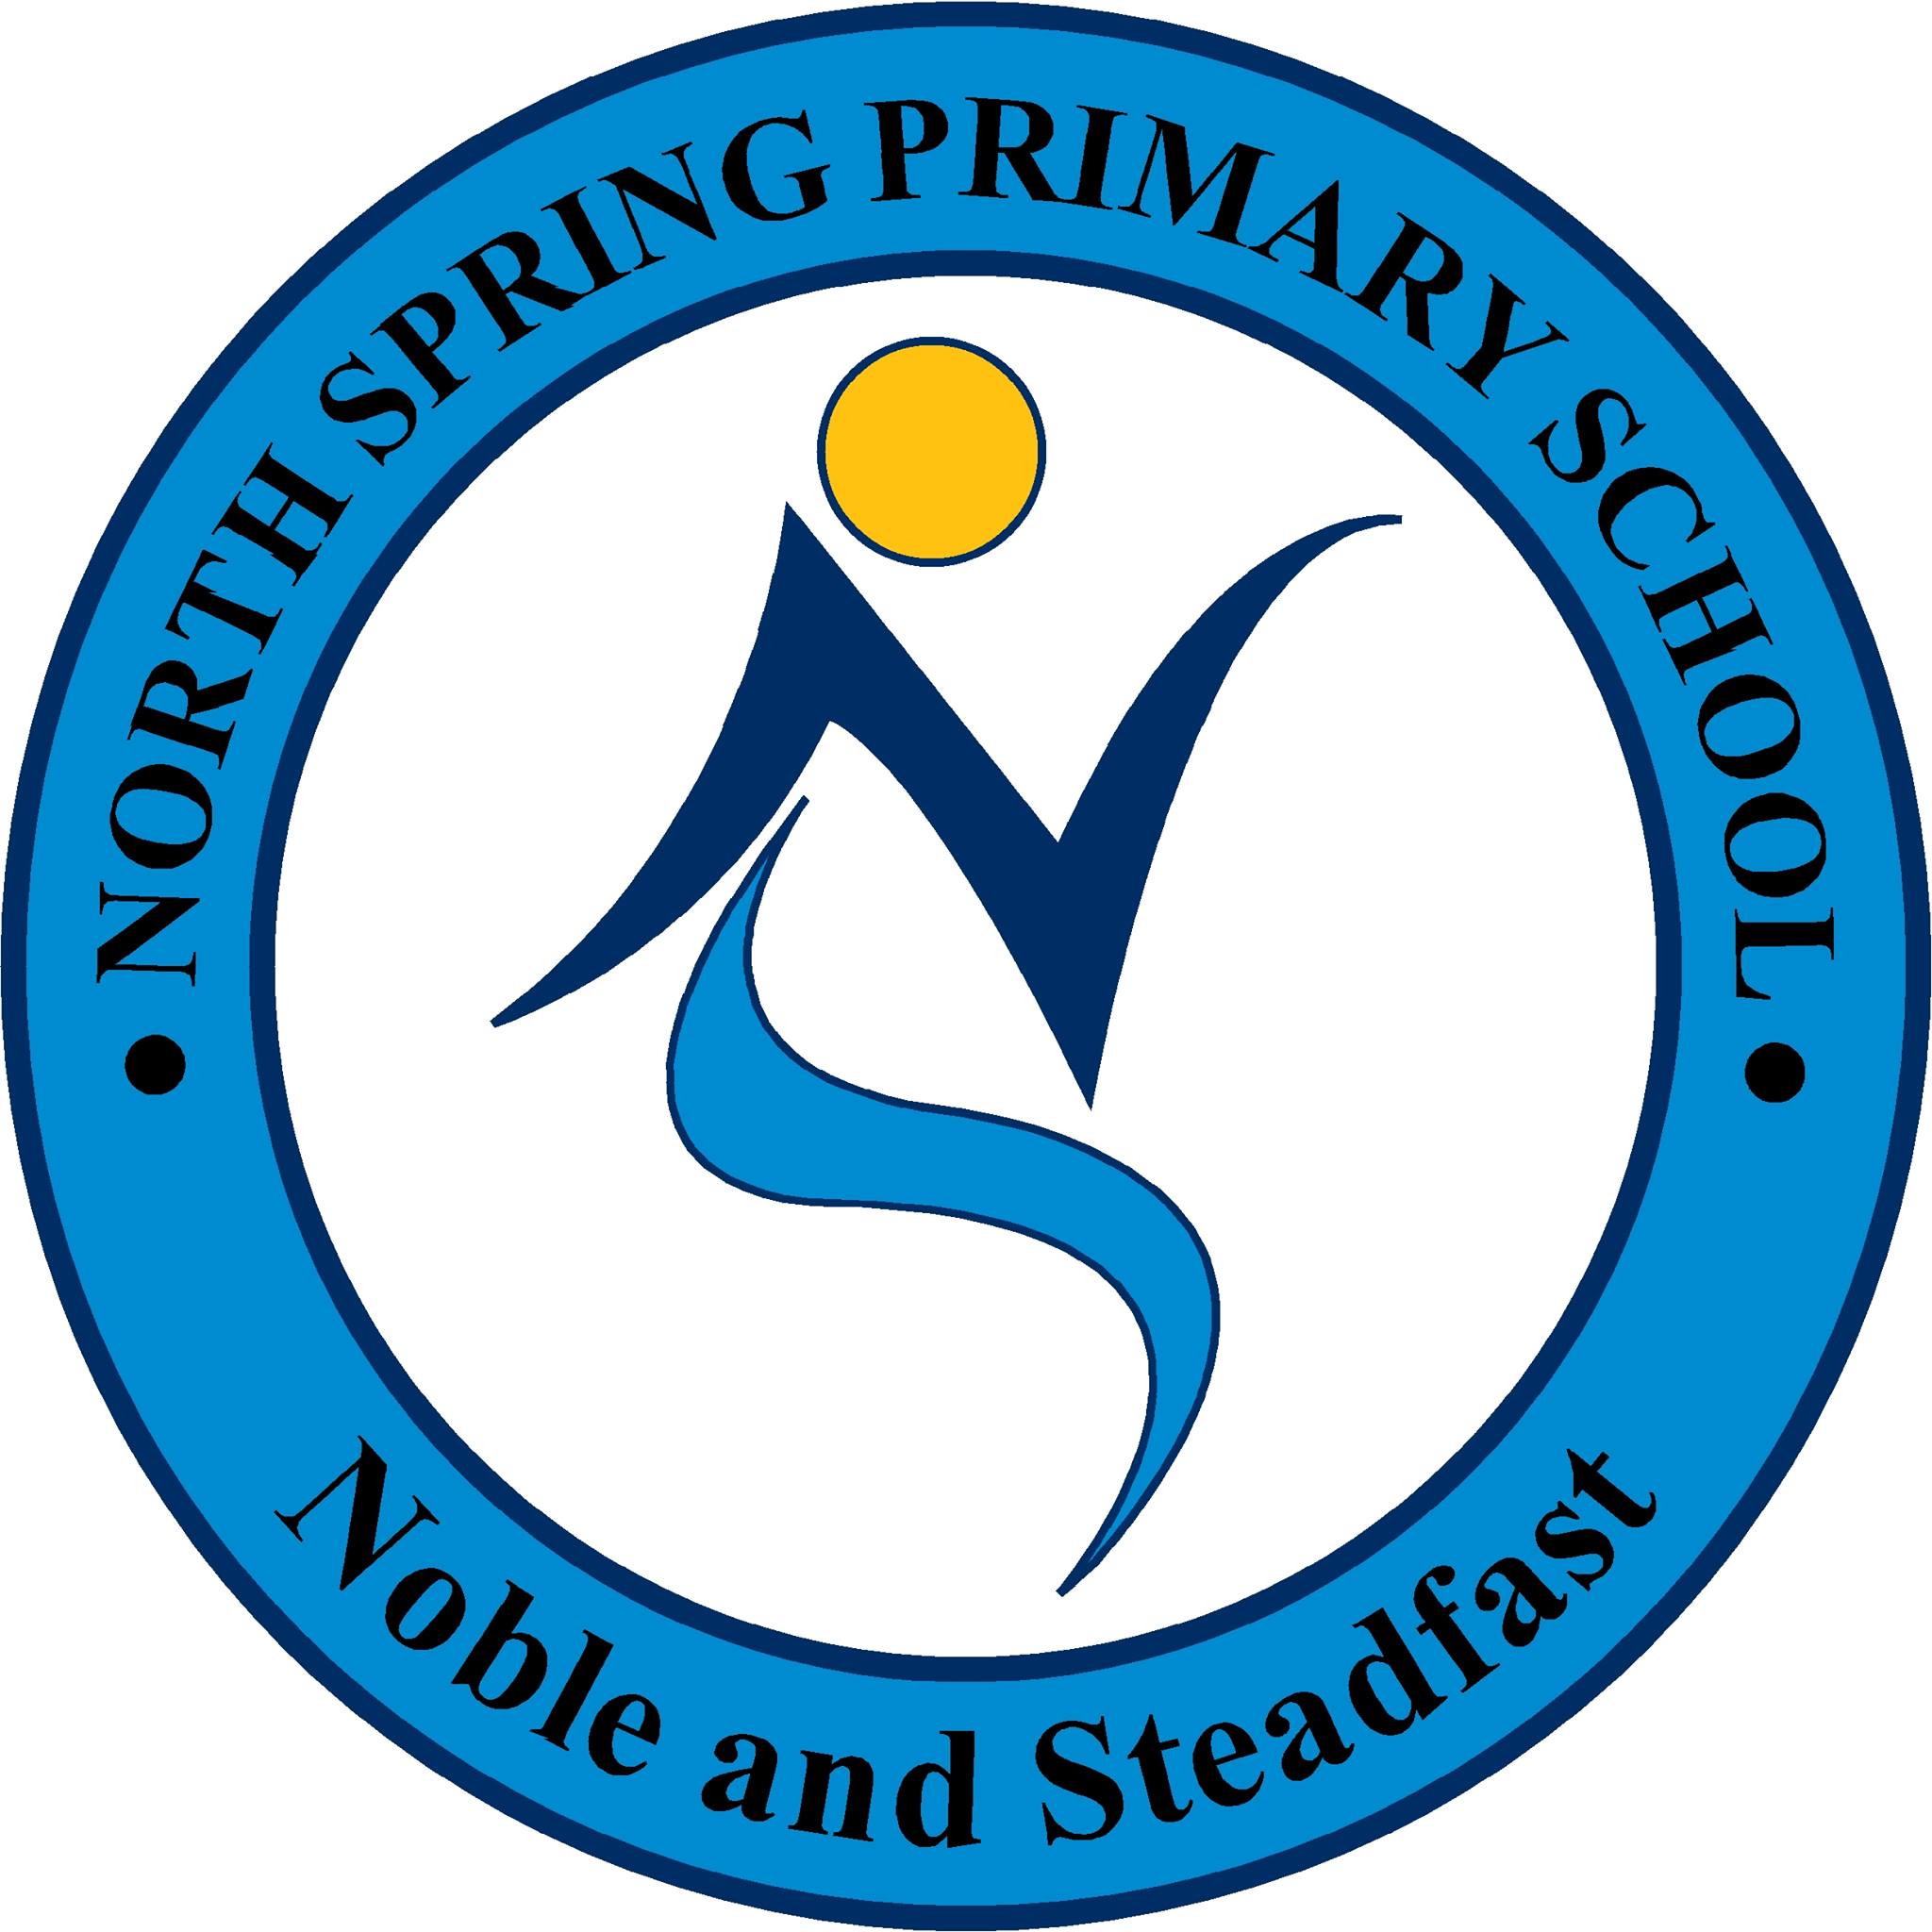 North Spring Primary School Logo